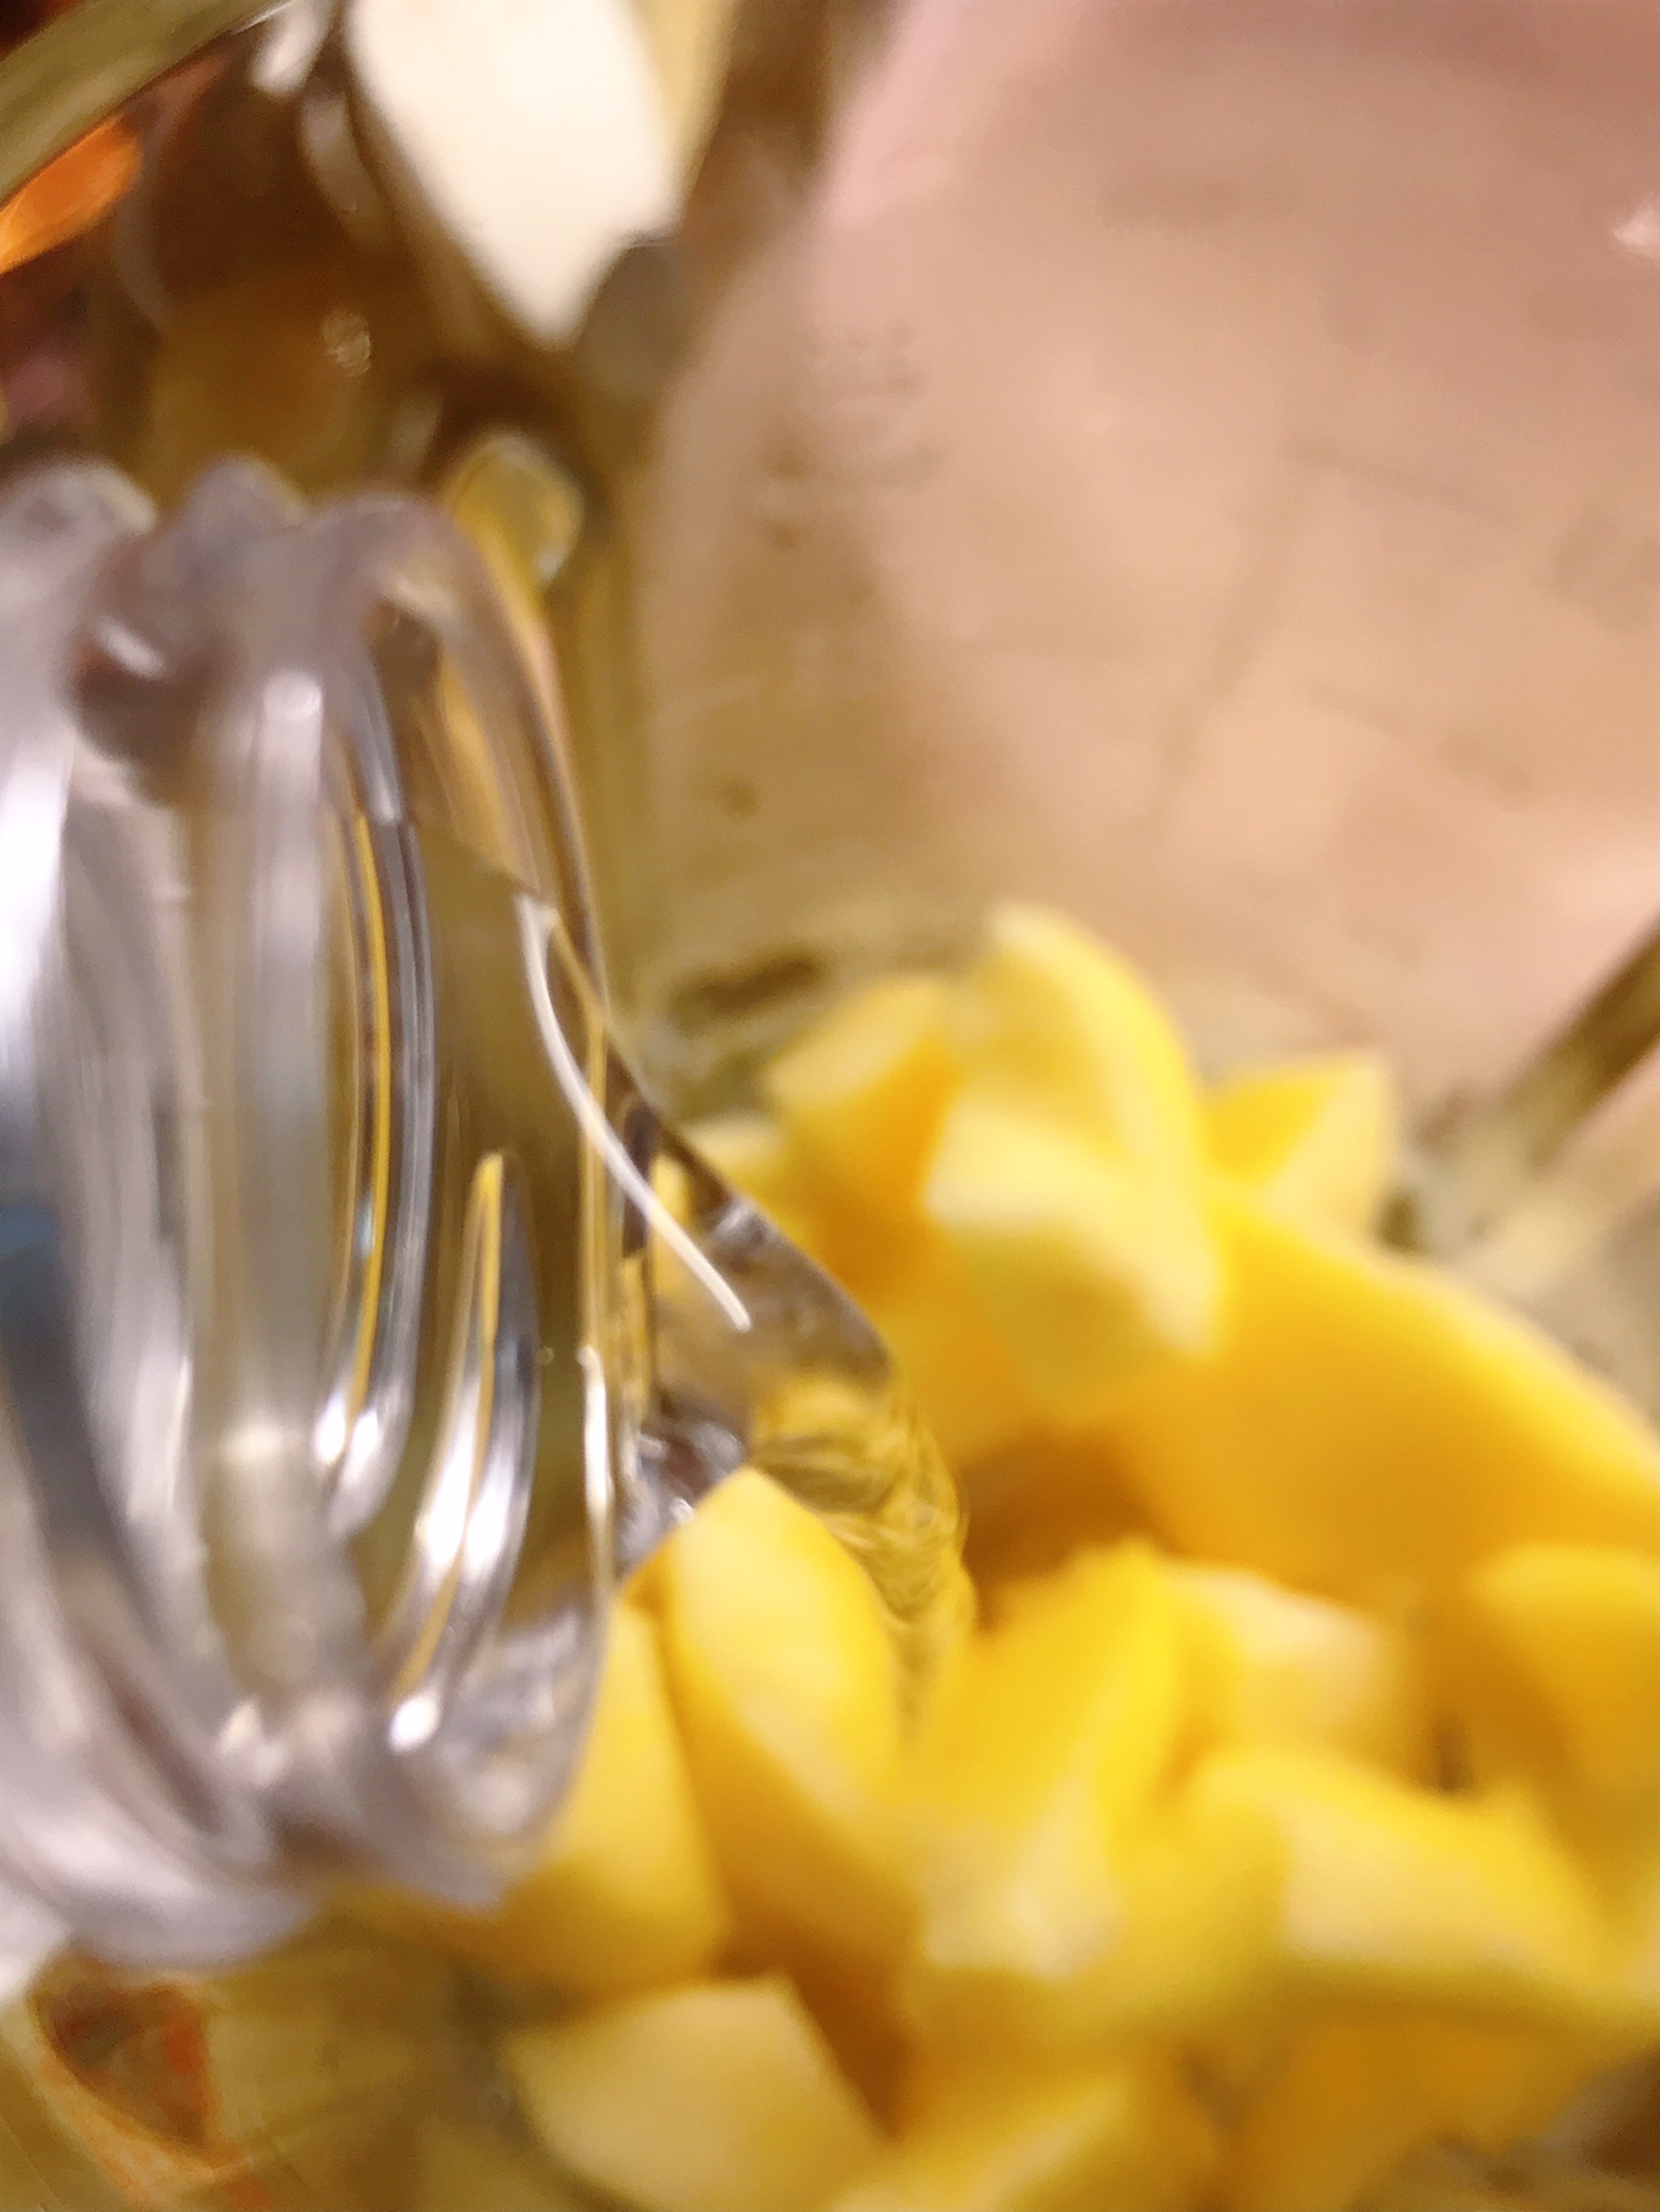 苹果雪梨汁怎么做_苹果雪梨汁的做法_薯条沾腐乳_豆果美食